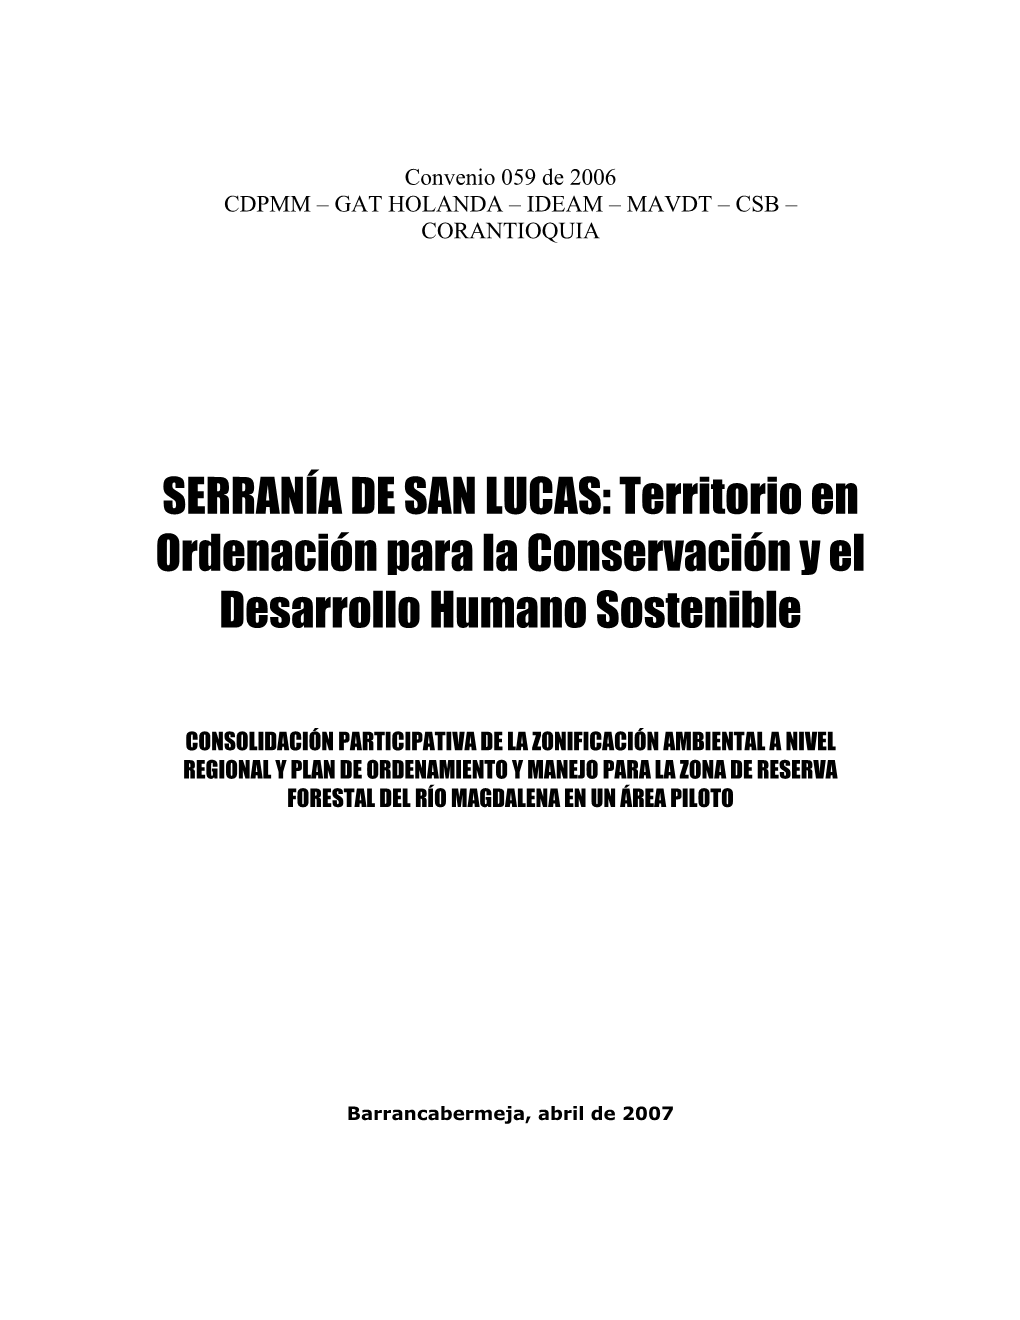 SERRANÍA DE SAN LUCAS: Territorio En Ordenación Para La Conservación Y El Desarrollo Humano Sostenible